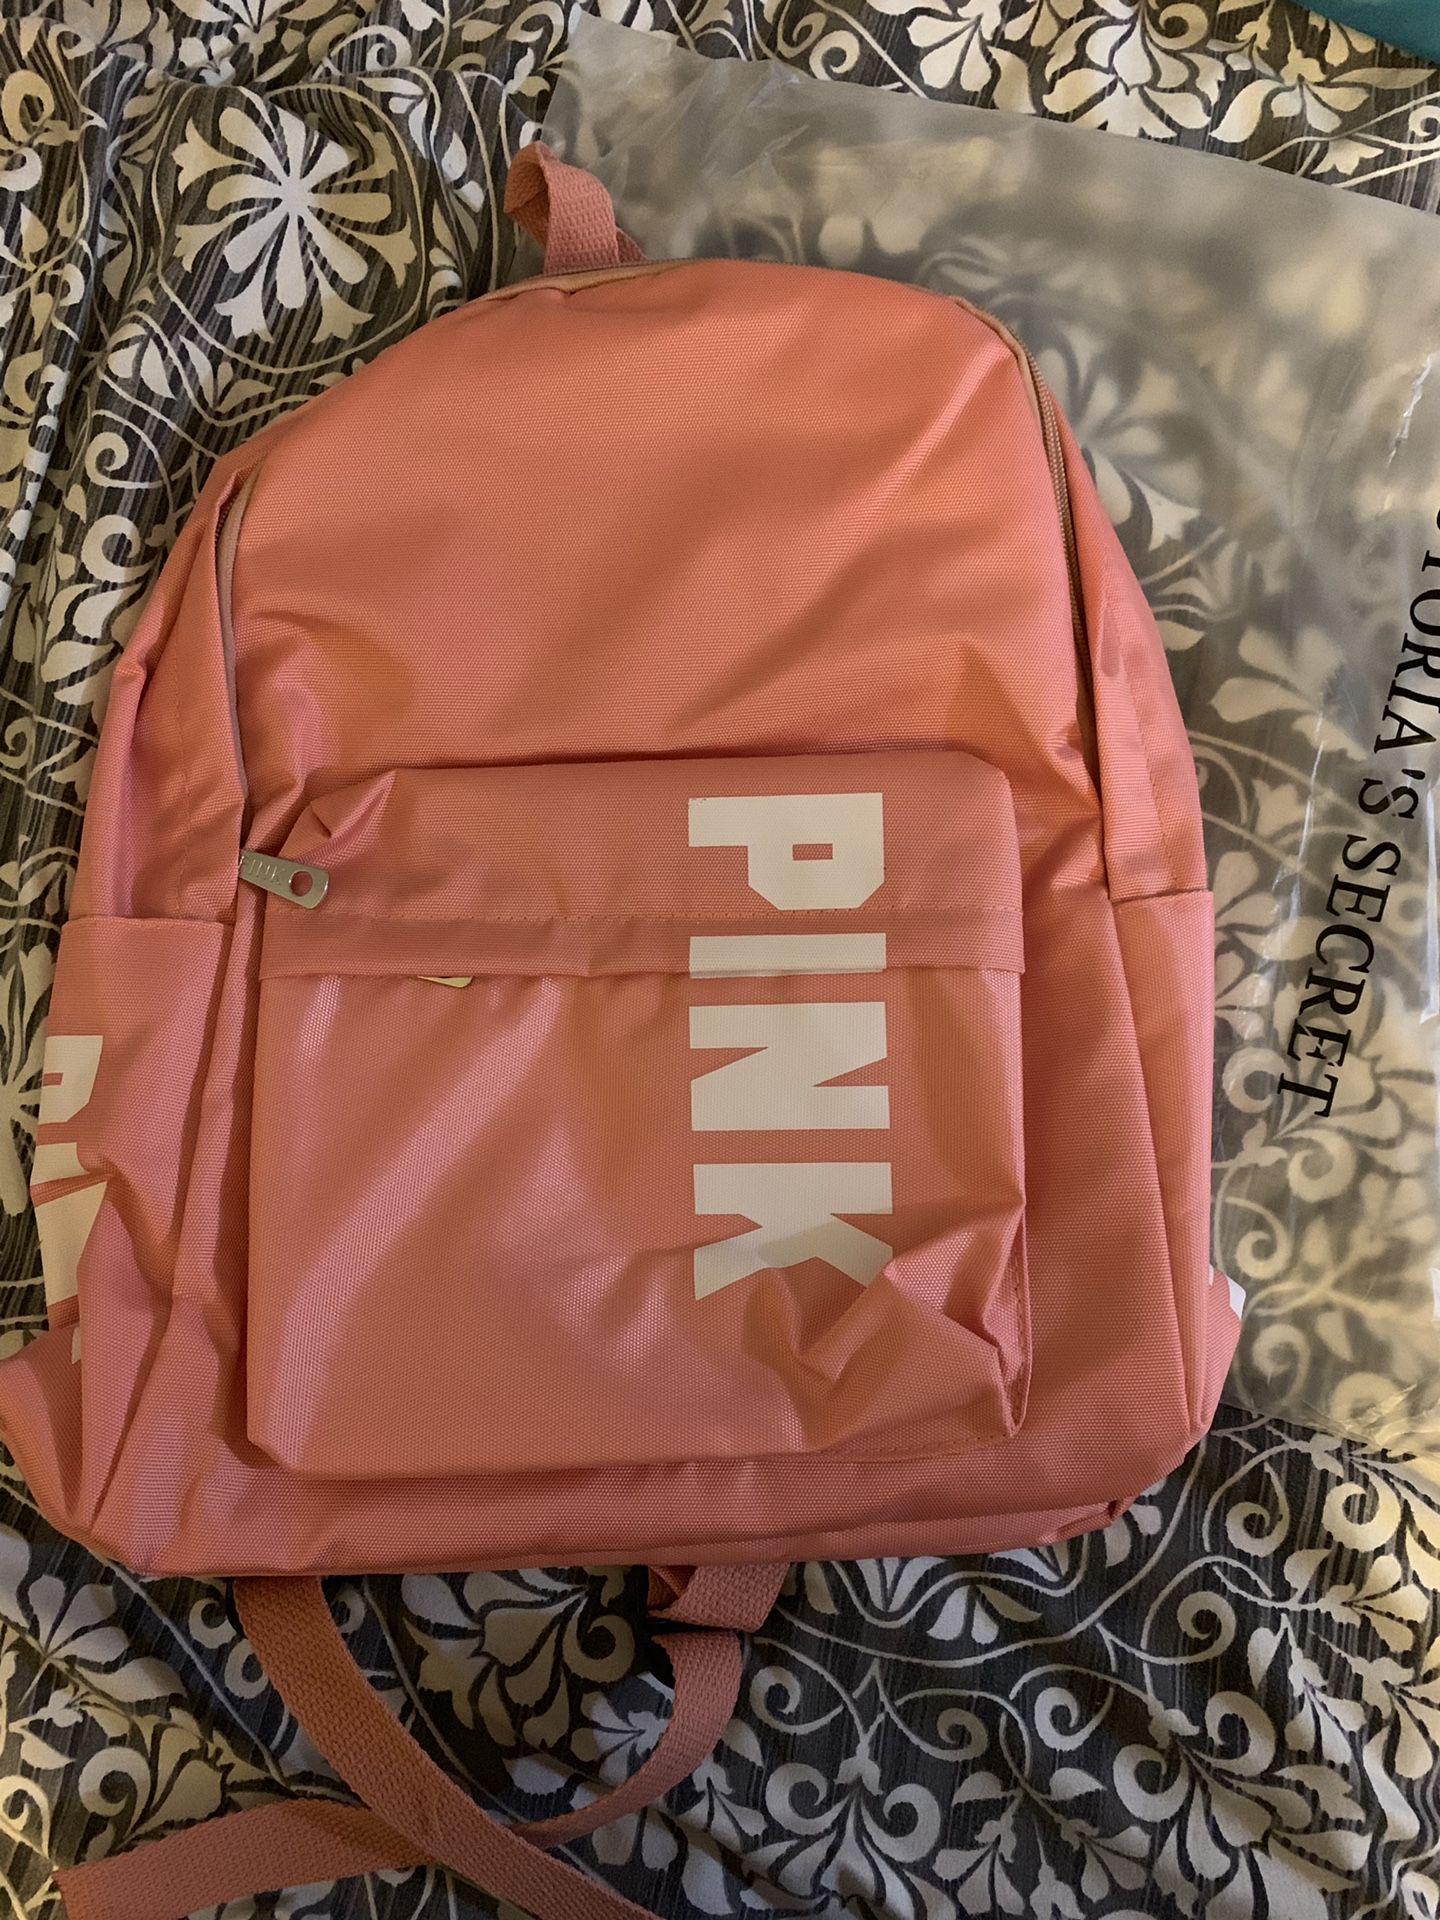 Vs pink backpack